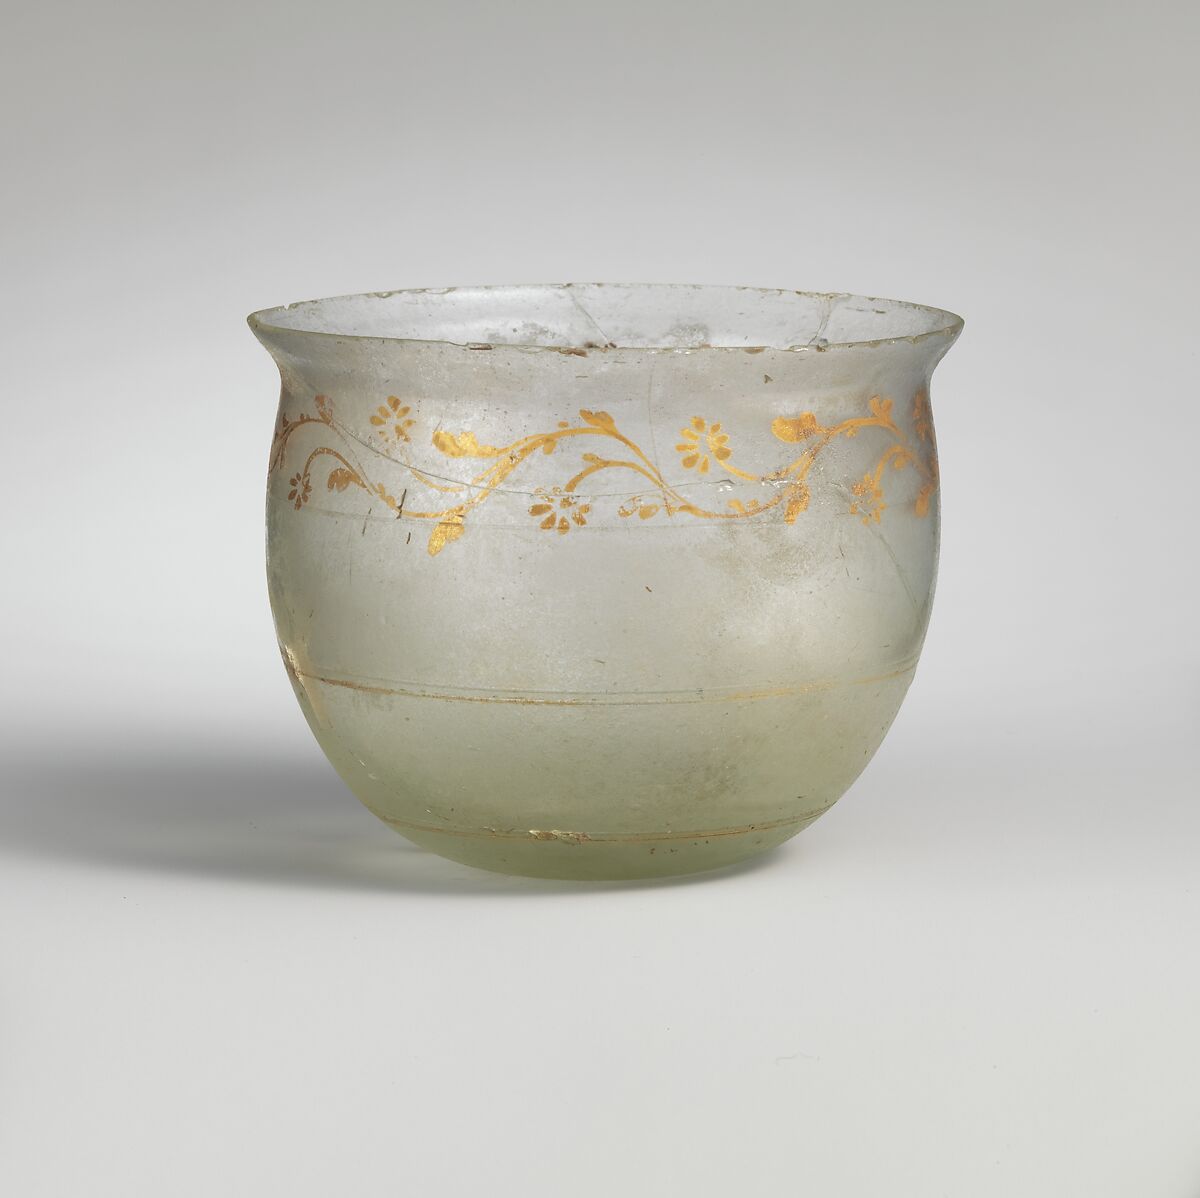 Glass bowl, Glass, Gold, Roman 